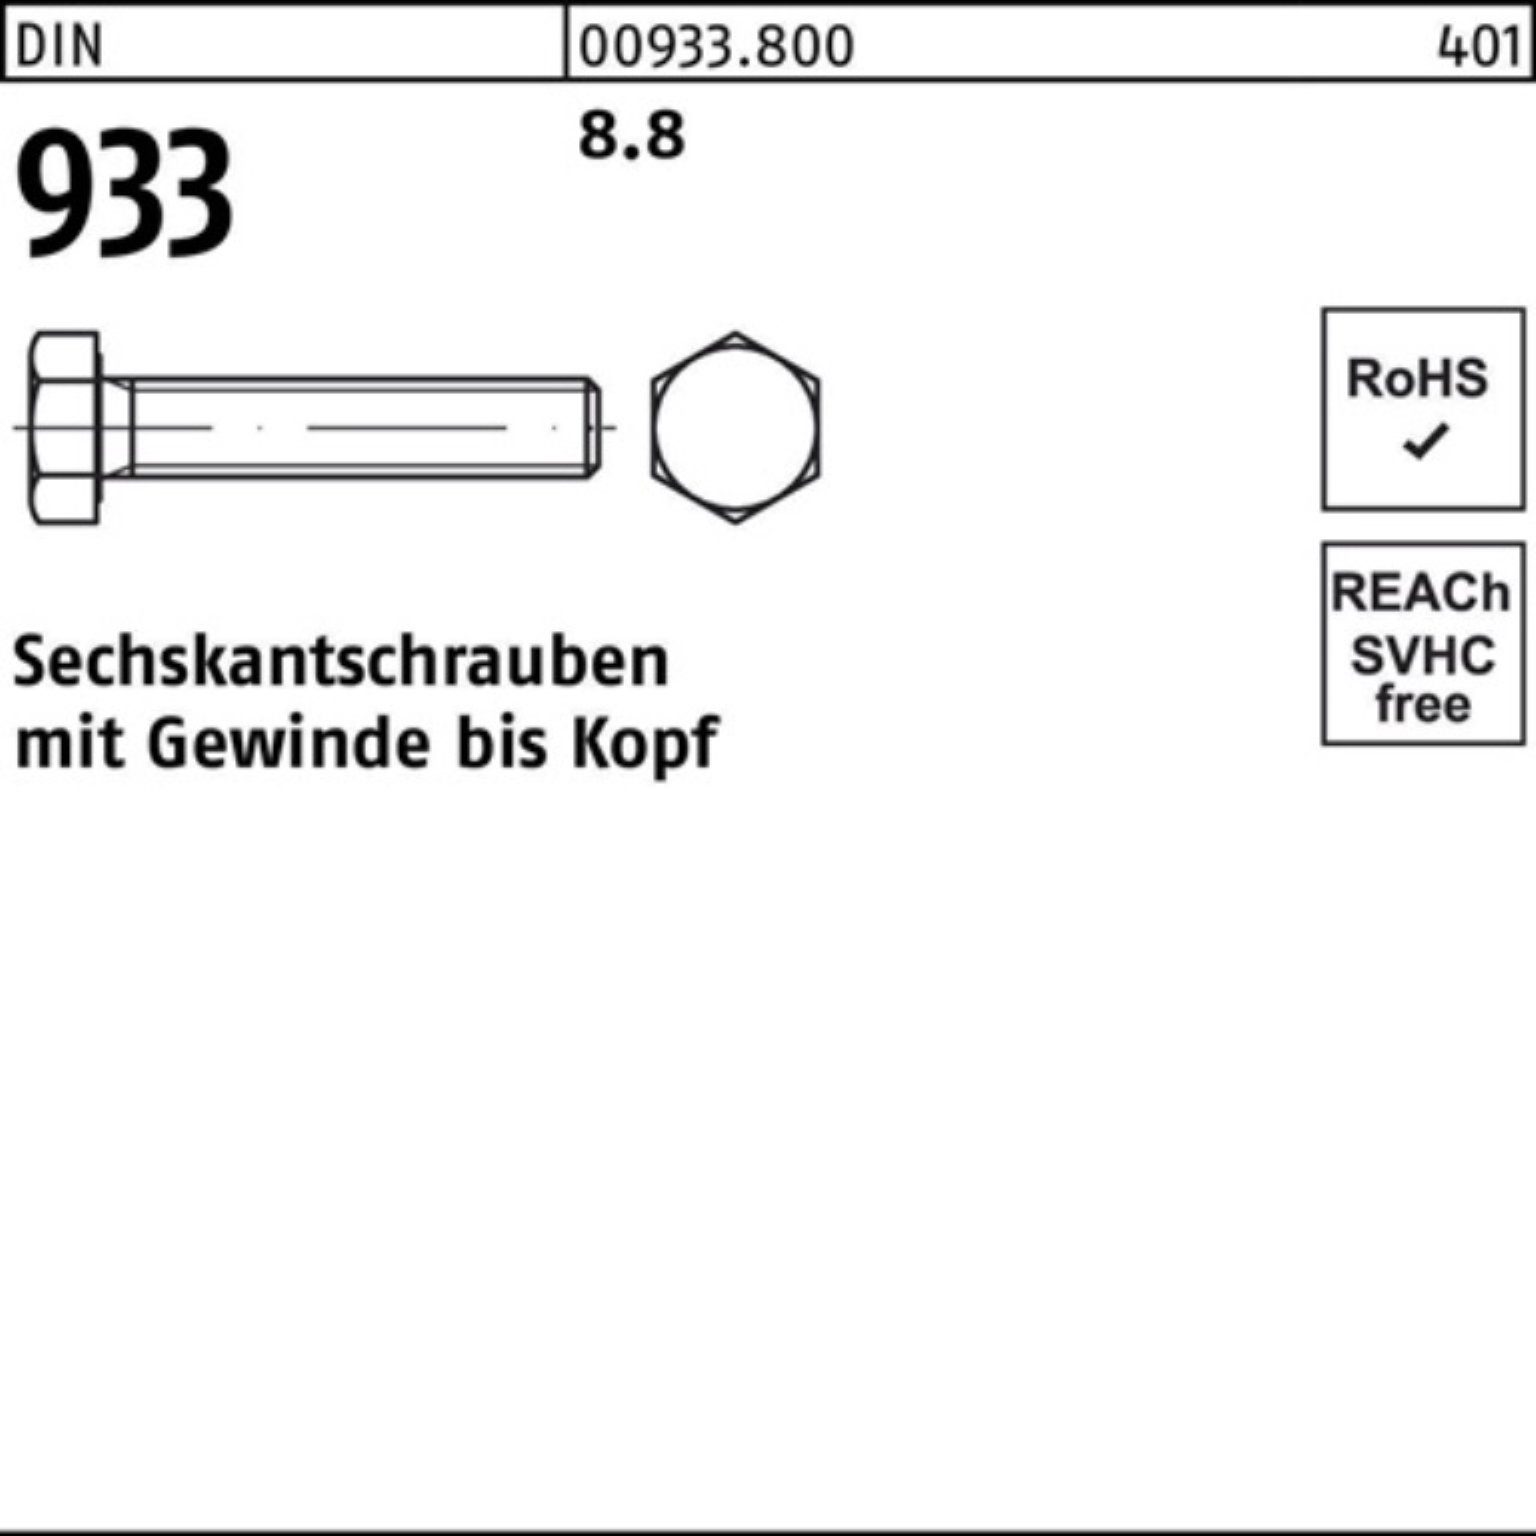 170 Sechskantschraube 100er M8x 100 Pack DIN VG 933 933 Sechskantschraube Reyher DIN 8.8 Stück